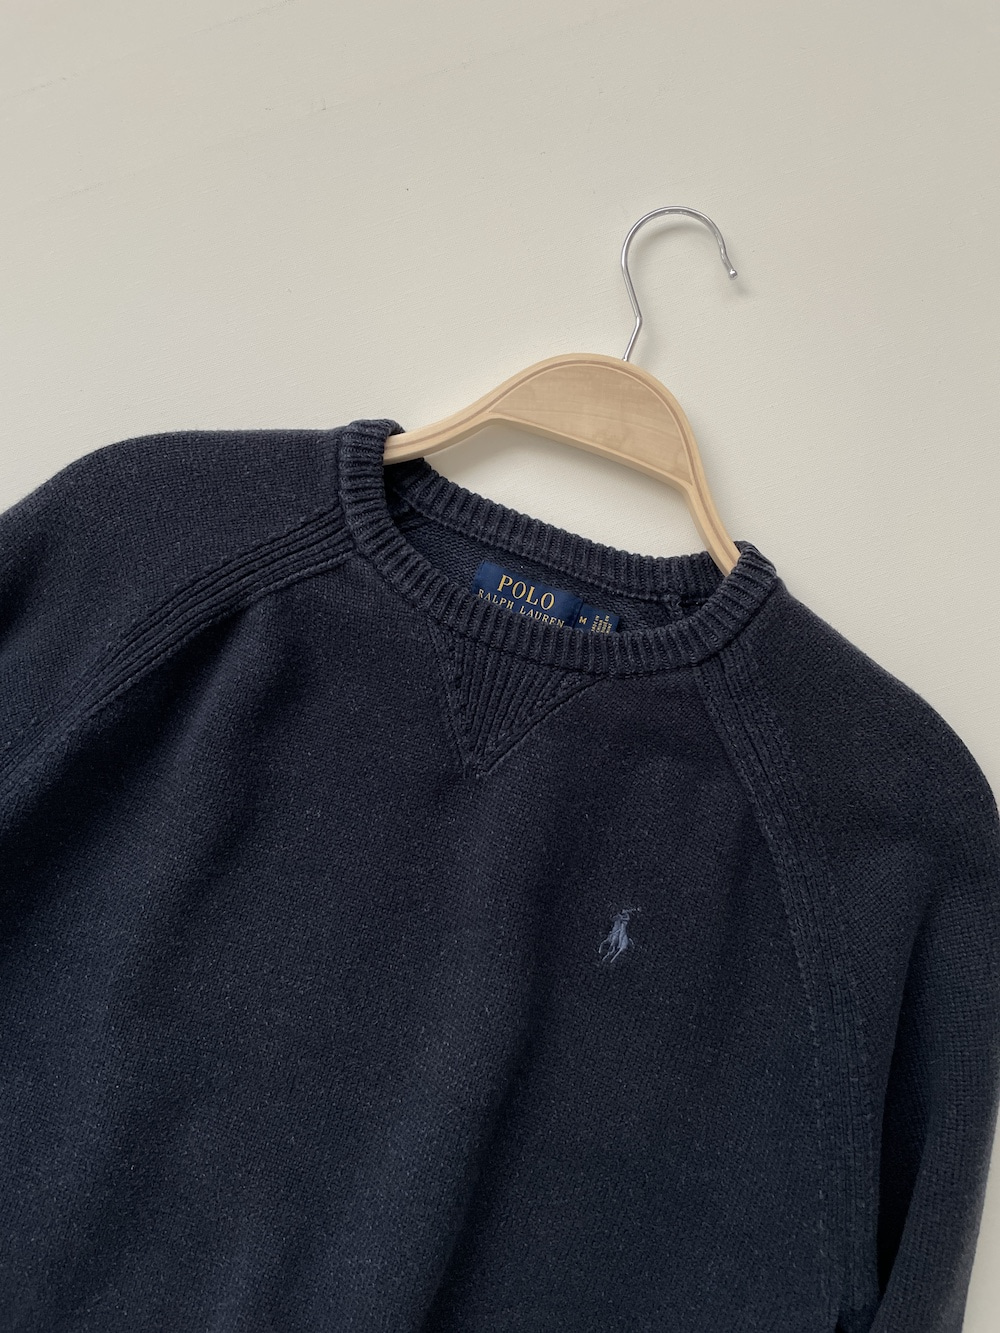 [ M ] Polo Ralph Lauren Sweater (7443)